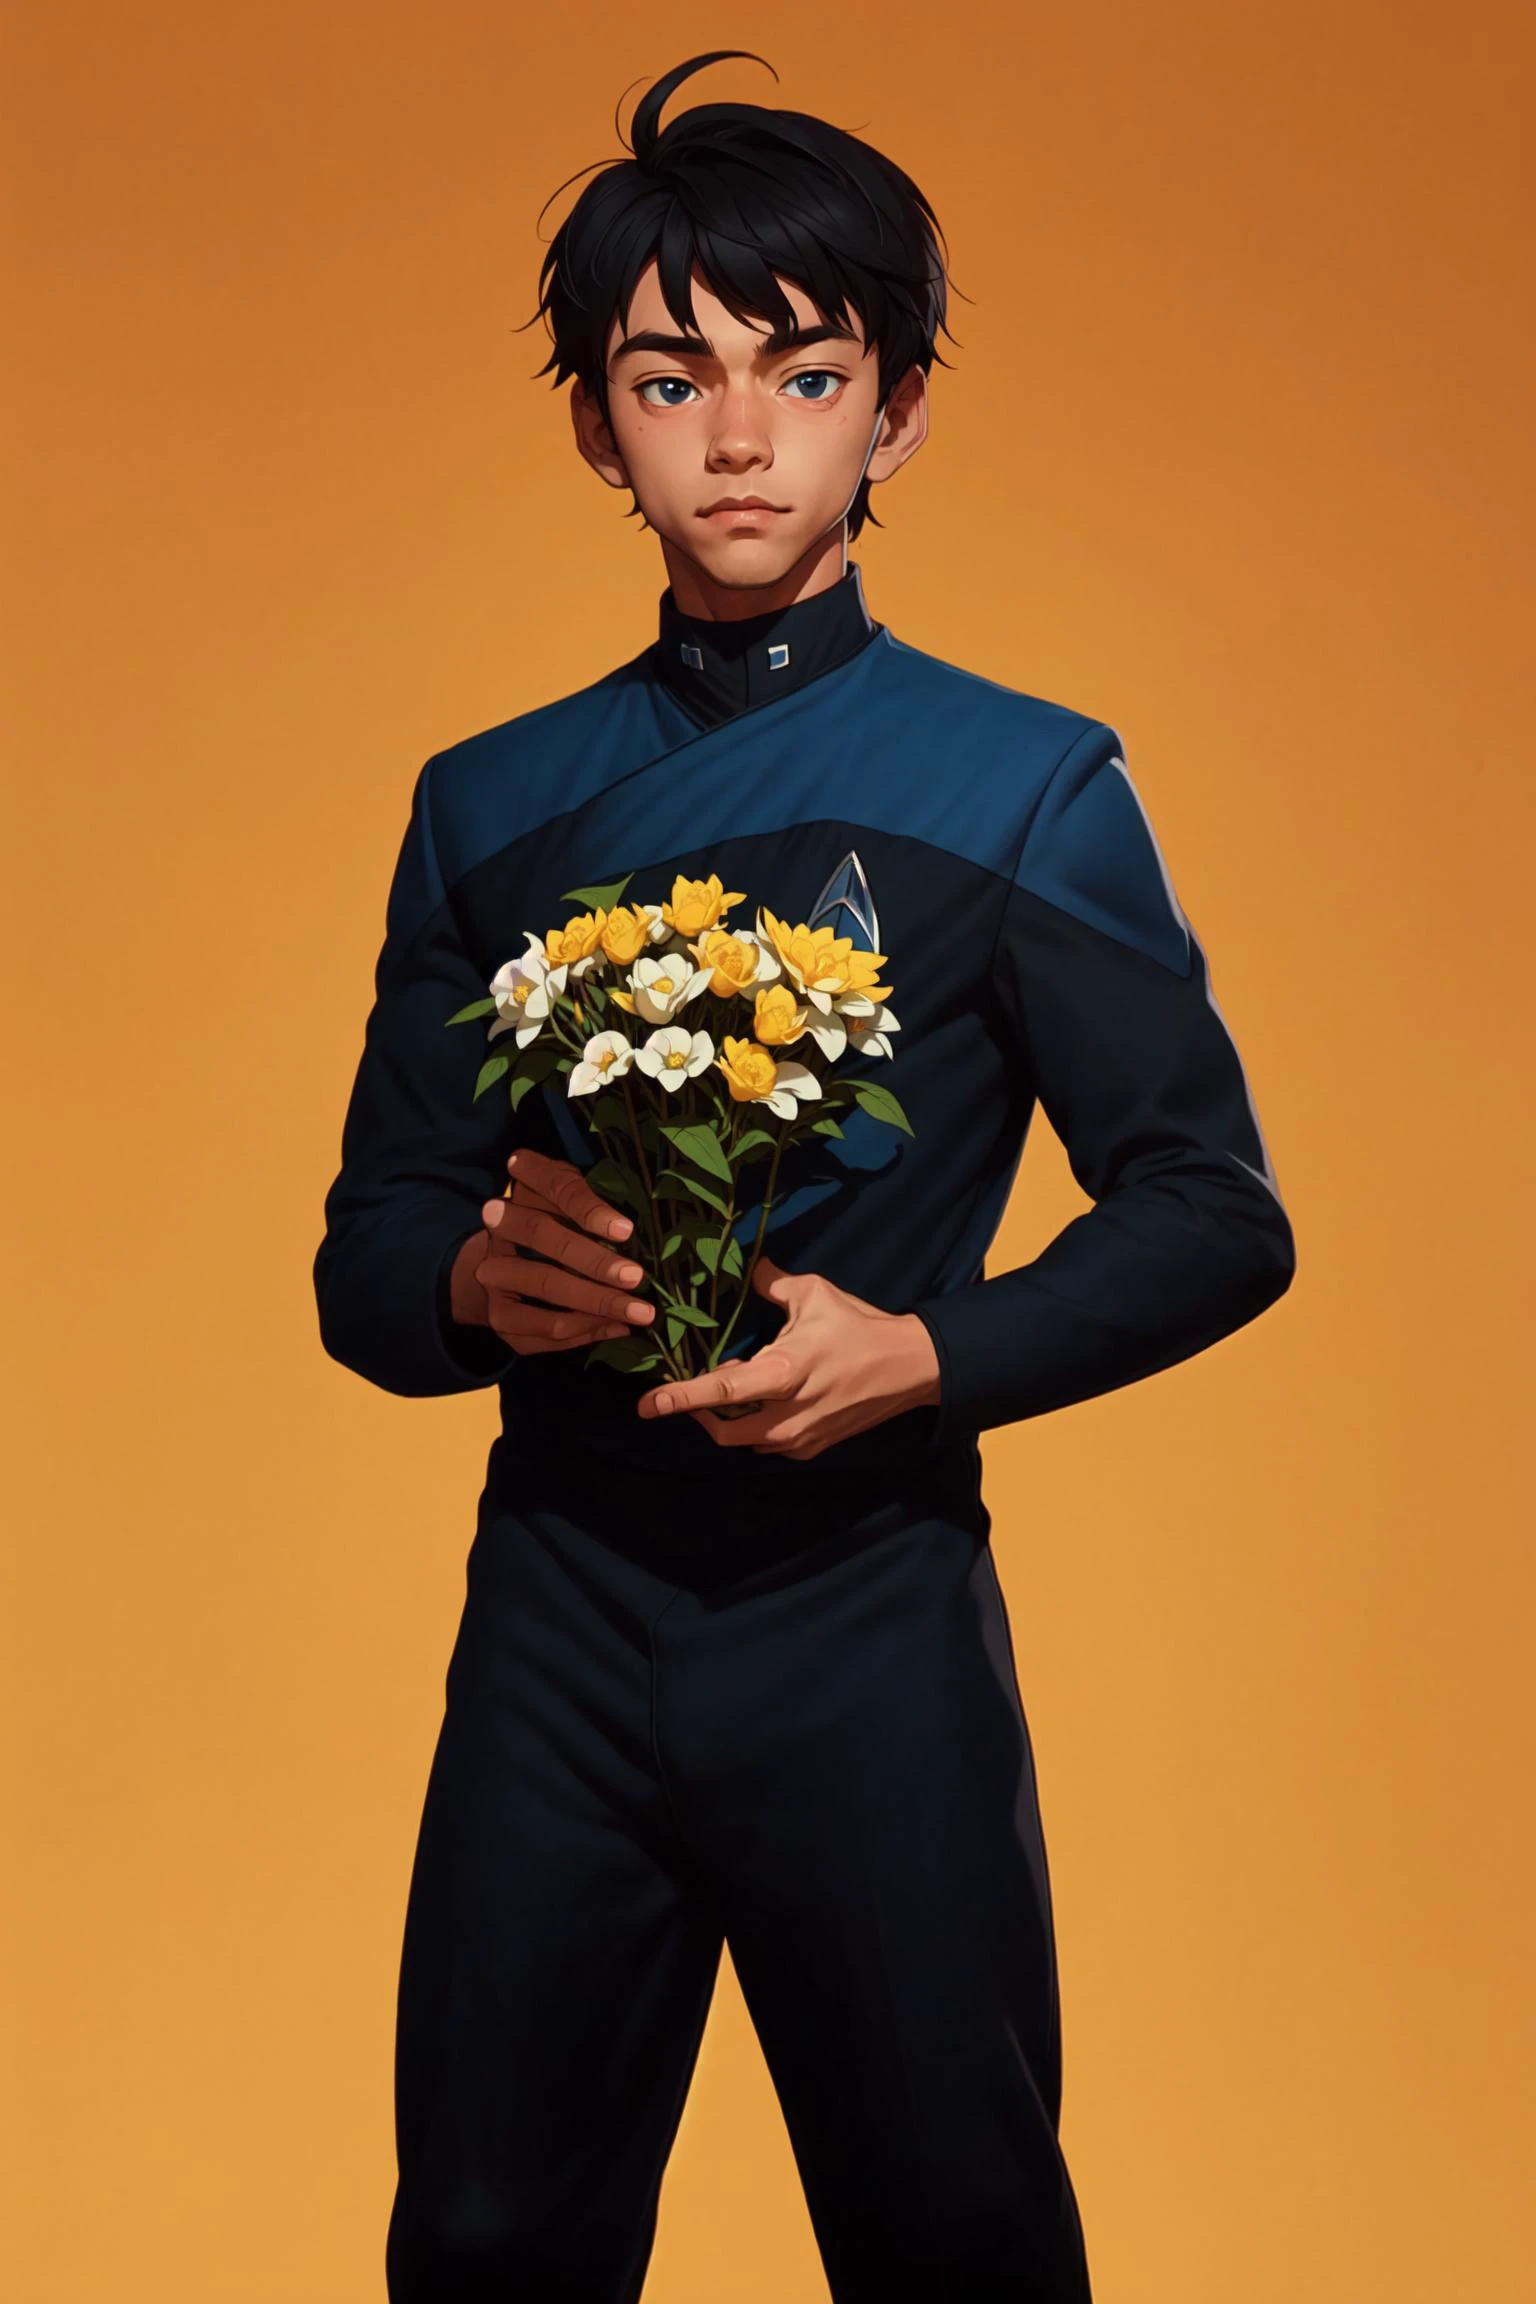 穿著 (PCDST藍色制服,黑褲子,黑色長袖:1.2),動漫15歲男孩, 美麗的 eye, 拿著一批花,  正視圖,  看著相機,  过来看,   美麗的,  傑作, 最好的品質, 透過黑星